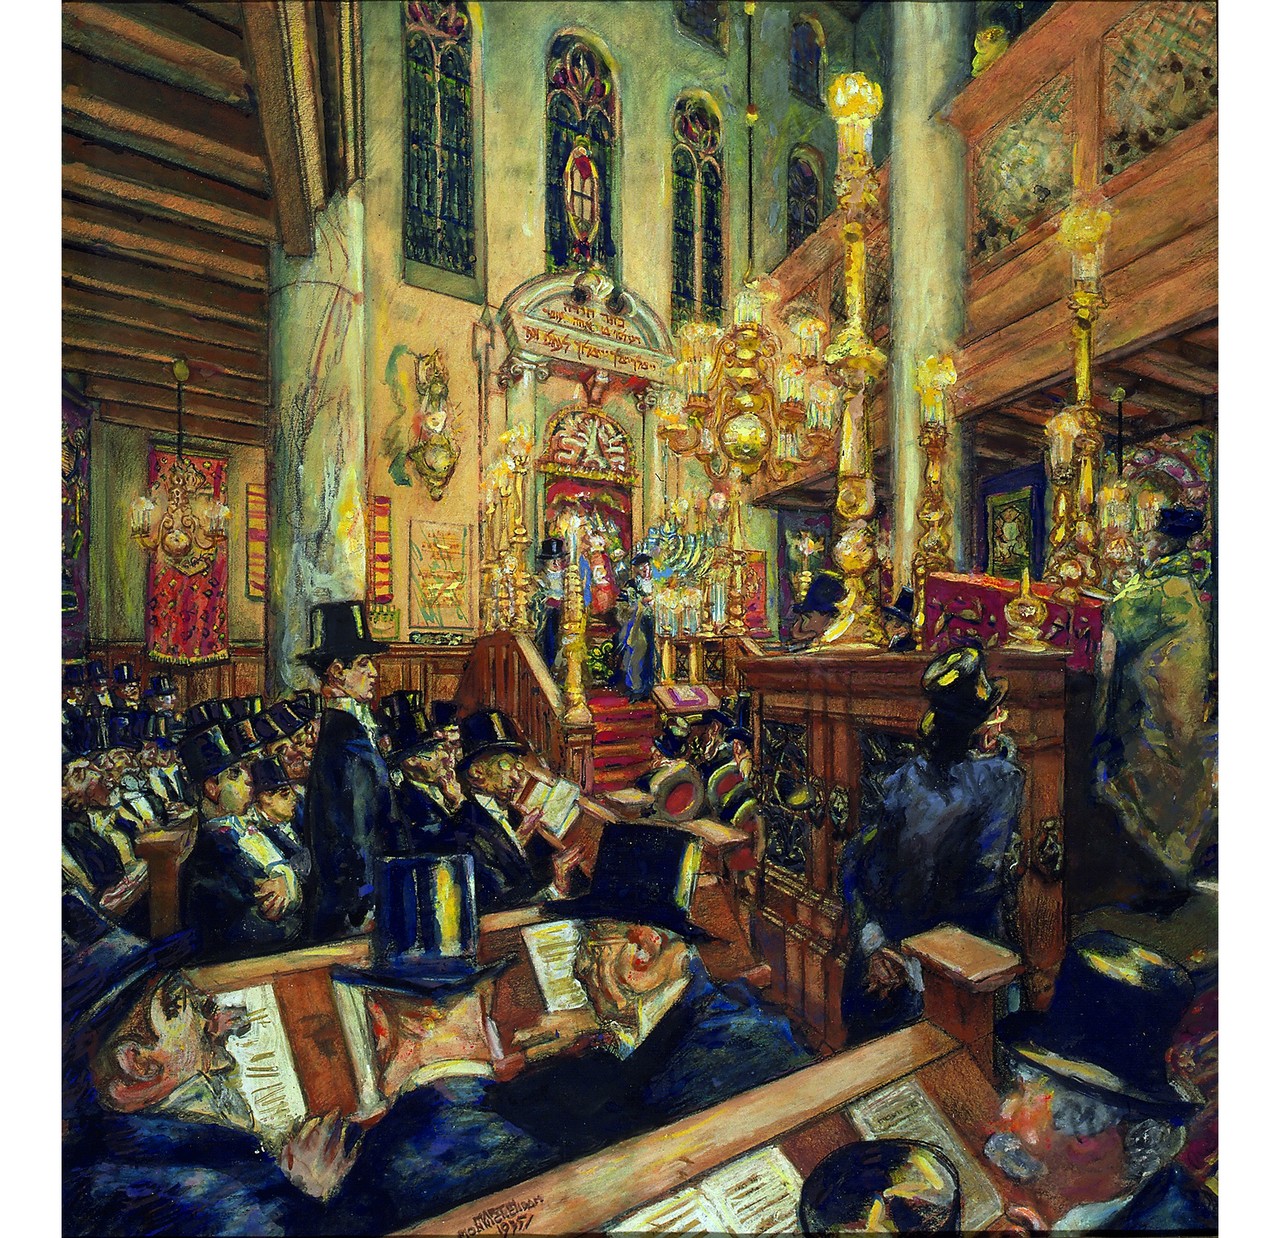 Amsterdam: Das Innere der Aschkenasischen Großen Synagoge. Öl auf Leinwand (1935). Quelle: Joods Historisch Museum, Amsterdam.